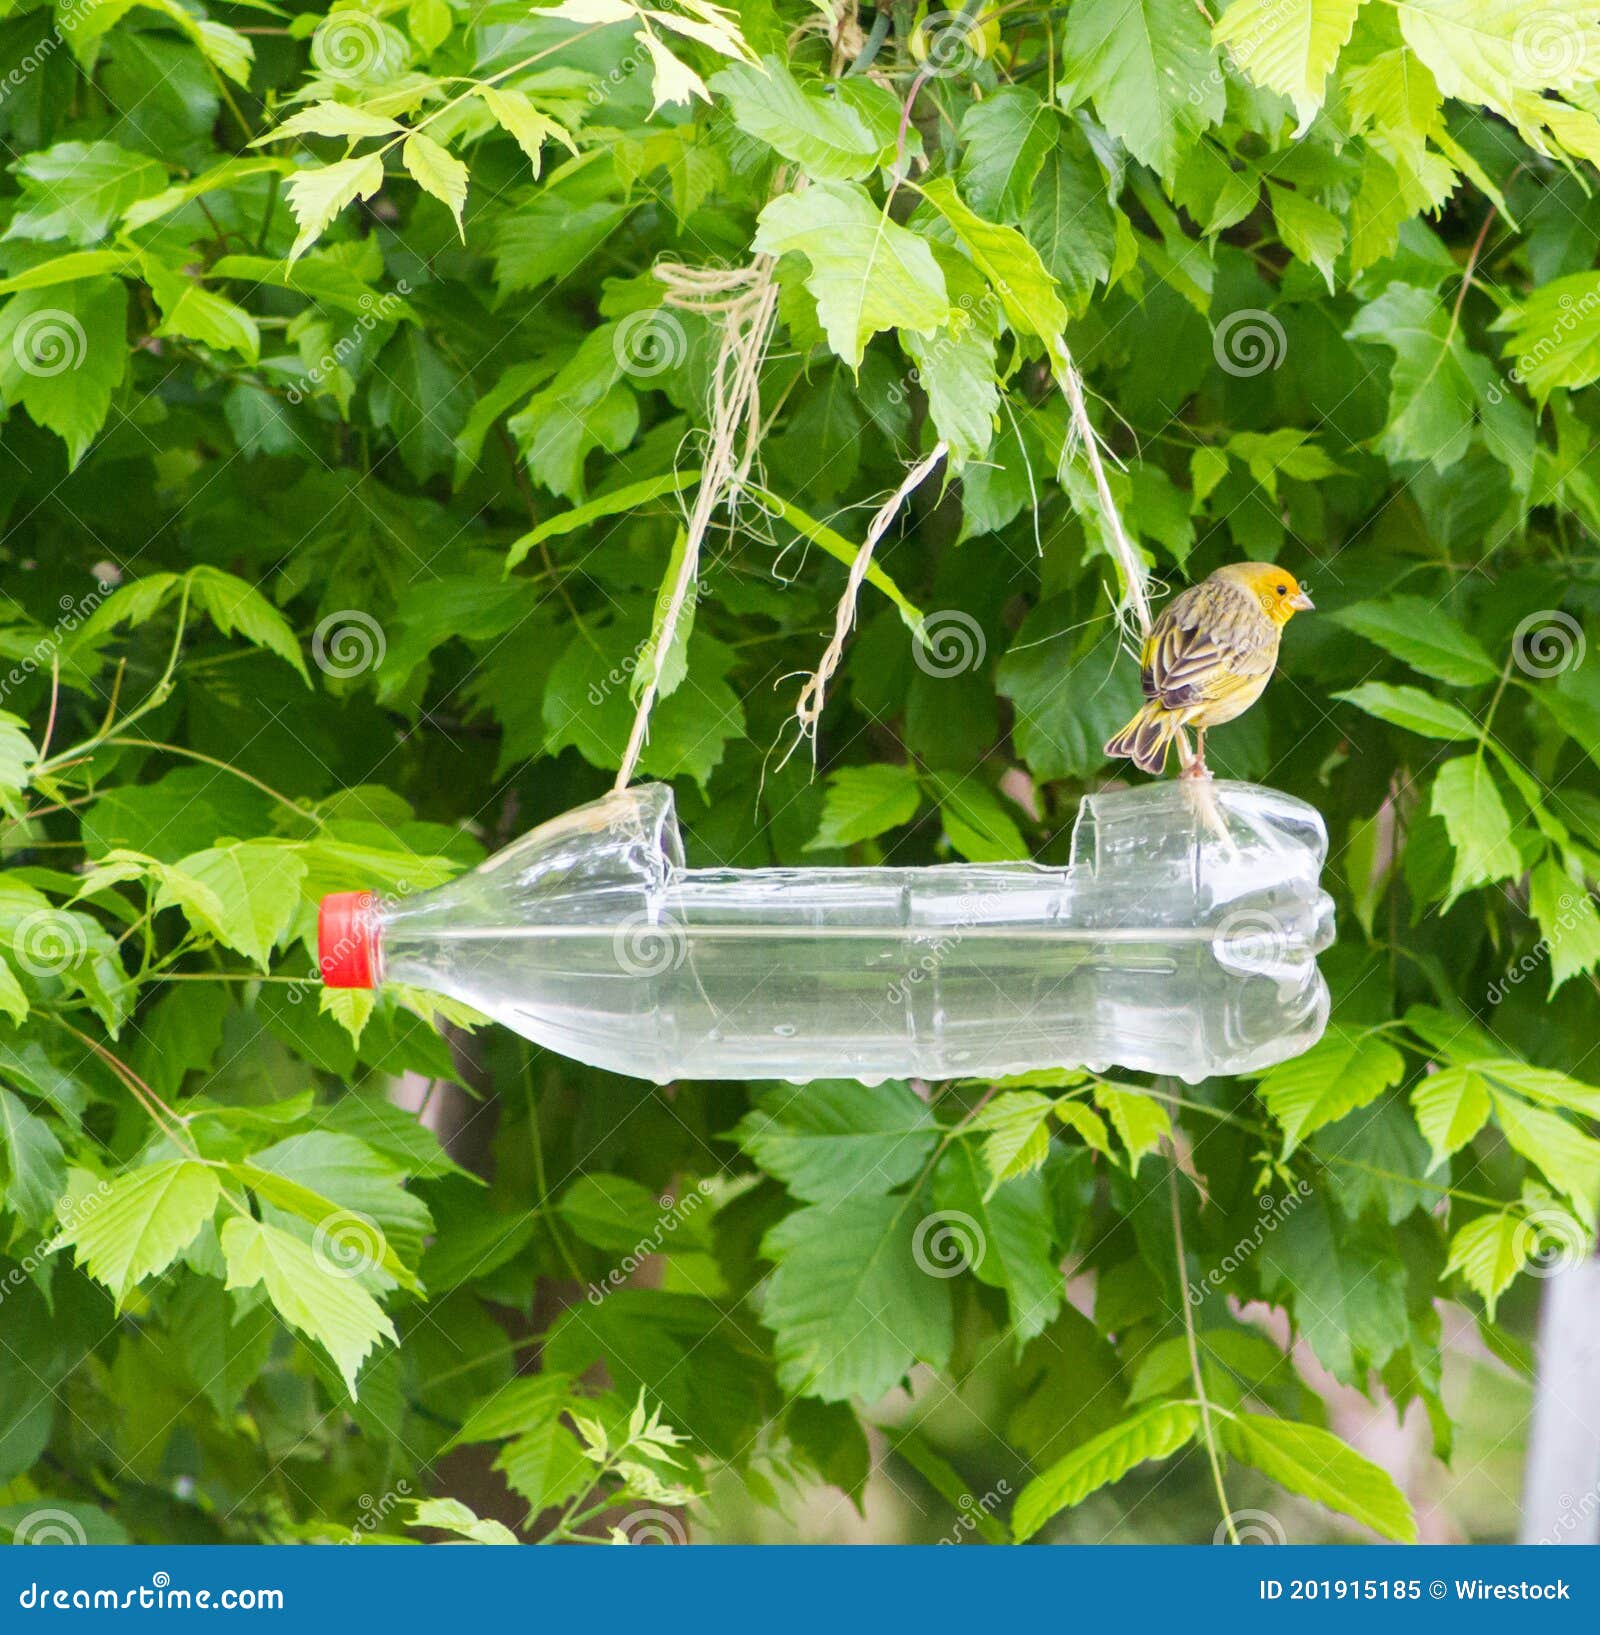 asignar Conciliar Monarca Alimentadores Artesanales Y Waterers Bird Hechos Con Botellas De Plástico  Recicladas Imagen de archivo - Imagen de casero, alimentadores: 201915185